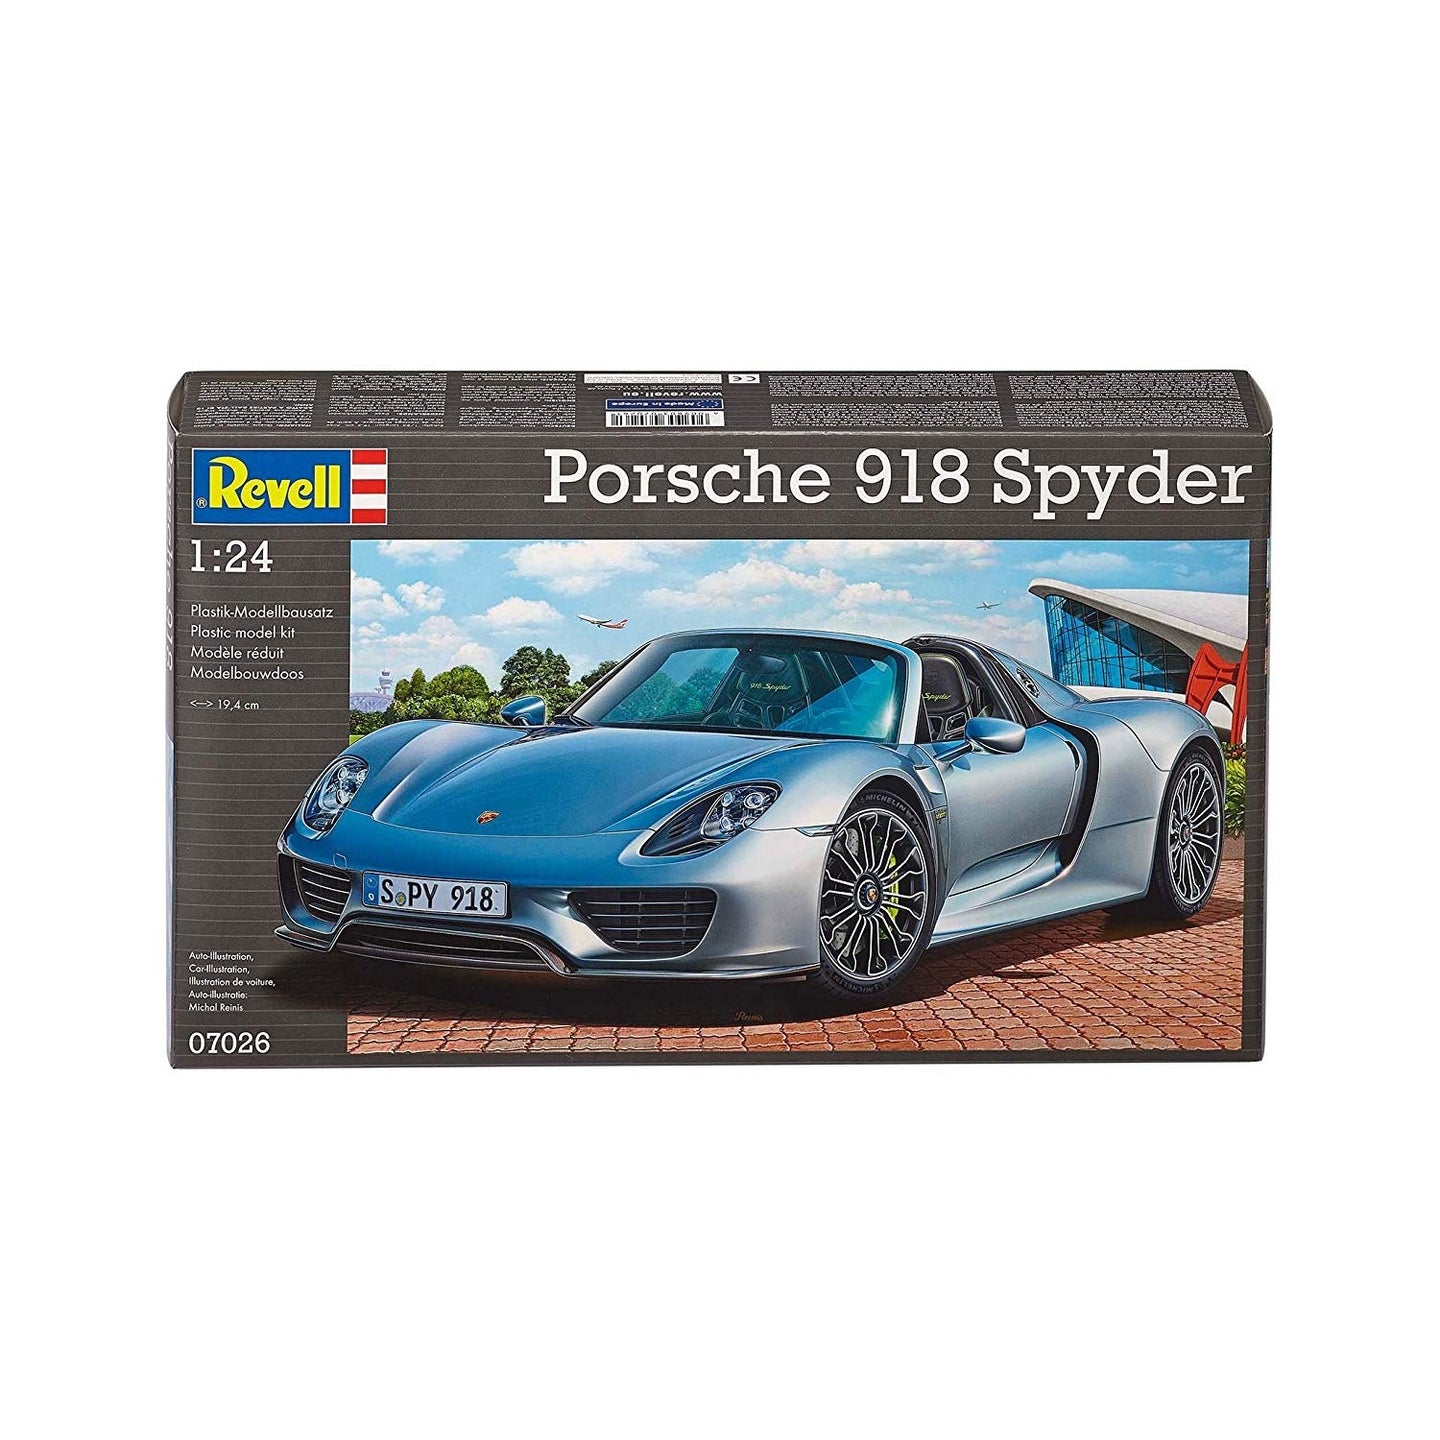 Revell 1/24 Porsche 918 Spyder Hypercar 07026